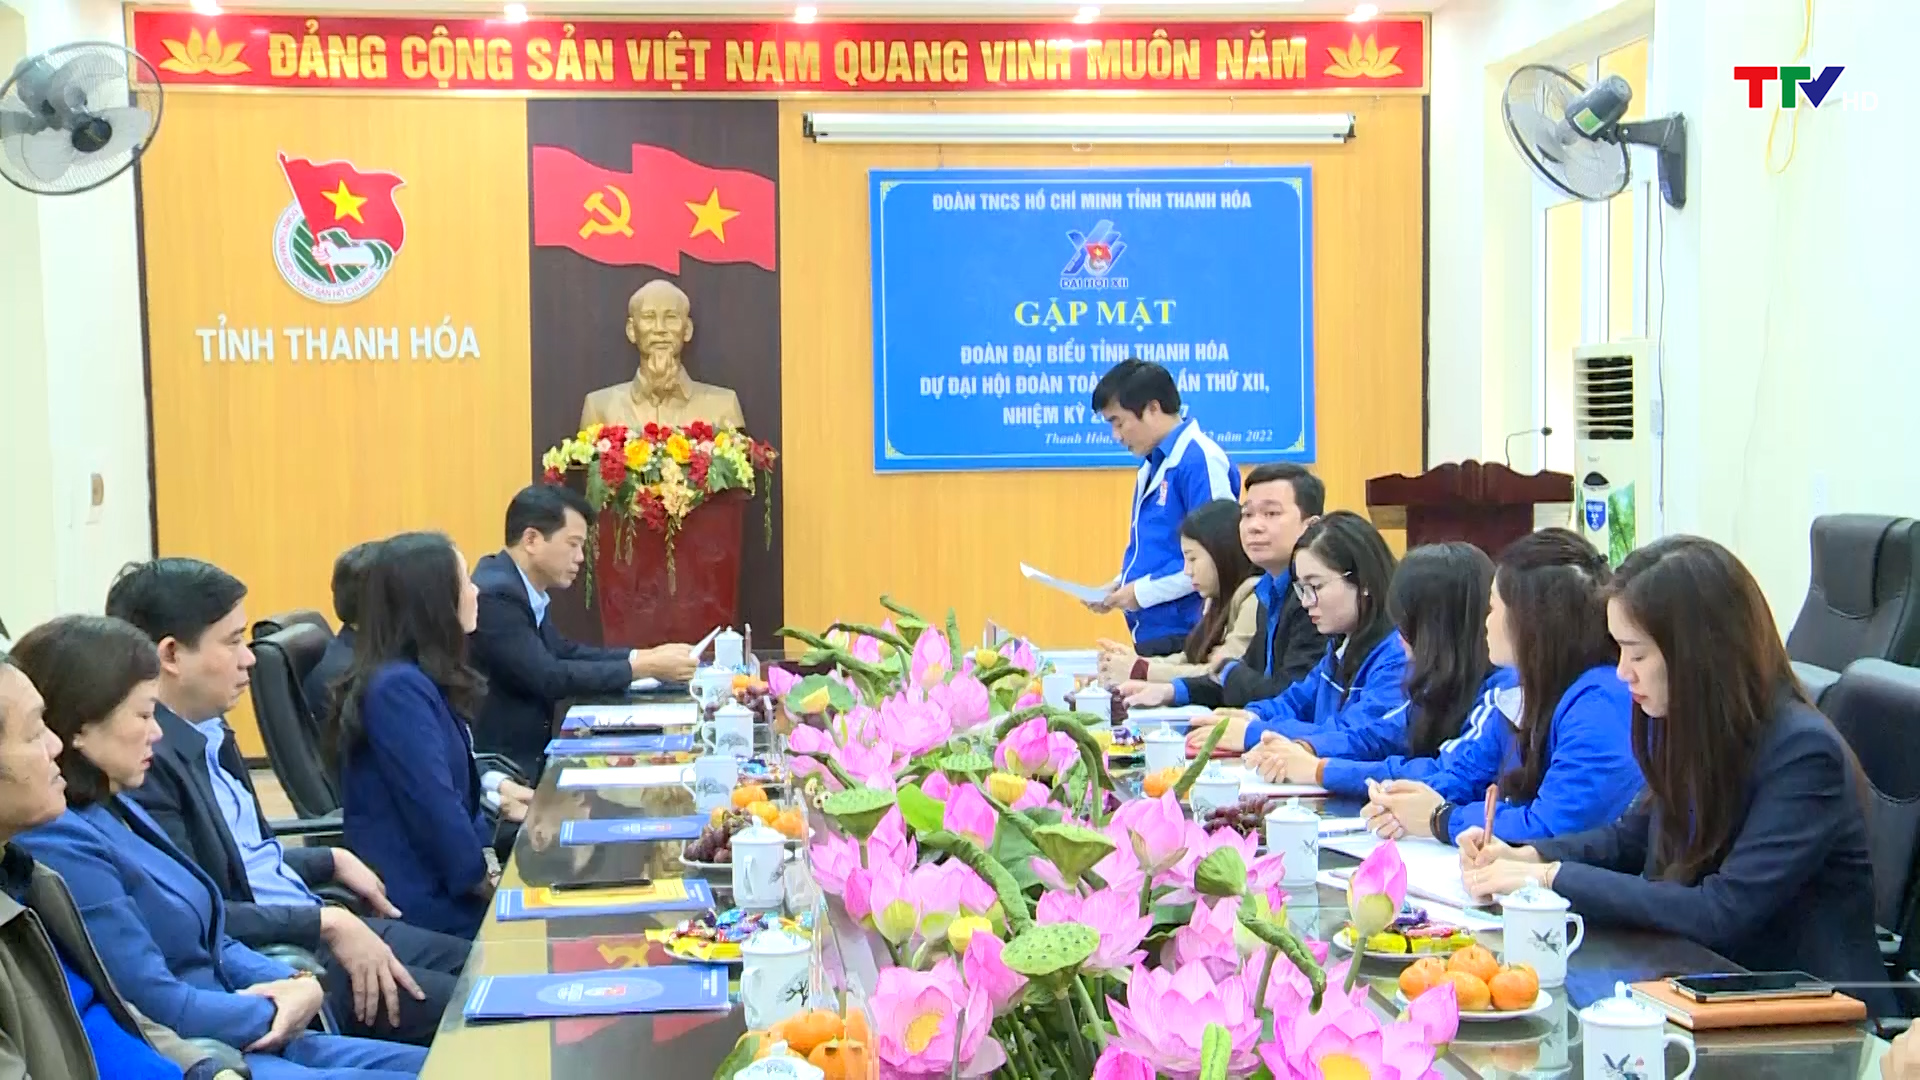 Gặp mặt Đoàn đại biểu tỉnh Thanh Hoá dự Đại hội Đoàn toàn quốc lần thứ XII, nhiệm kỳ 2022 -2027 - Ảnh 2.